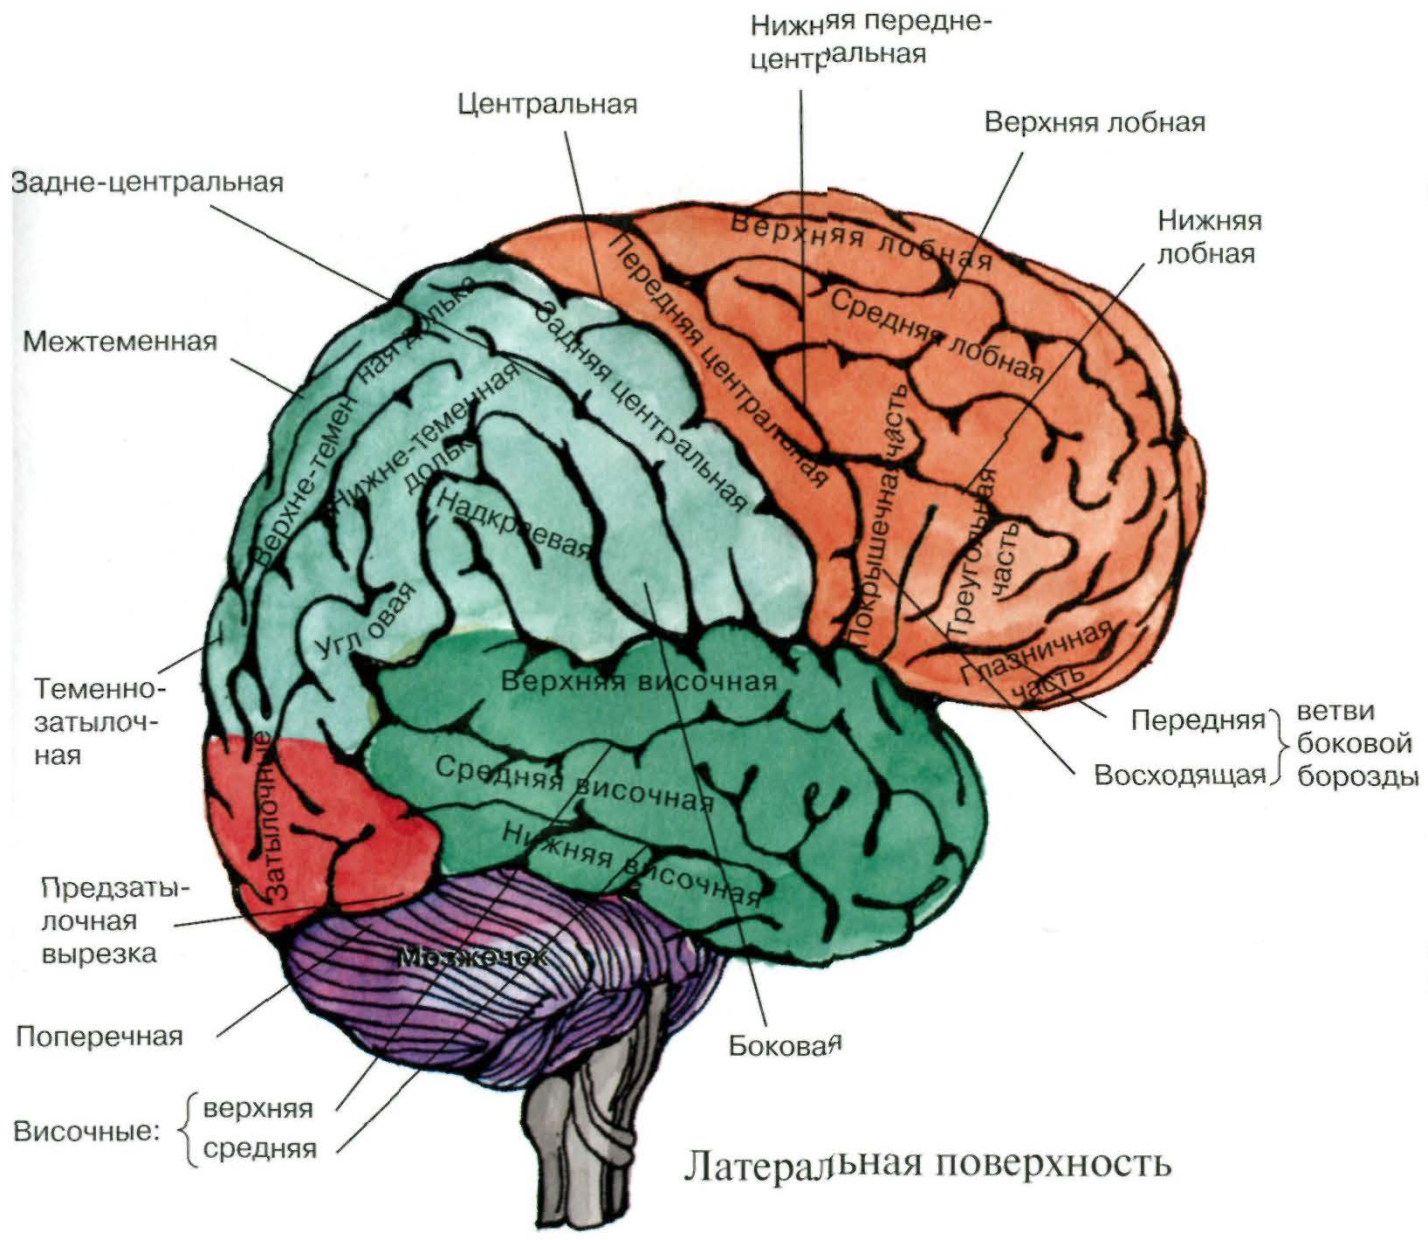 Конвекситальные борозды большого мозга. Теменно-затылочная область мозга. Конвекситальные отделы лобных долей мозга это. Отдел головного мозга включающий кору